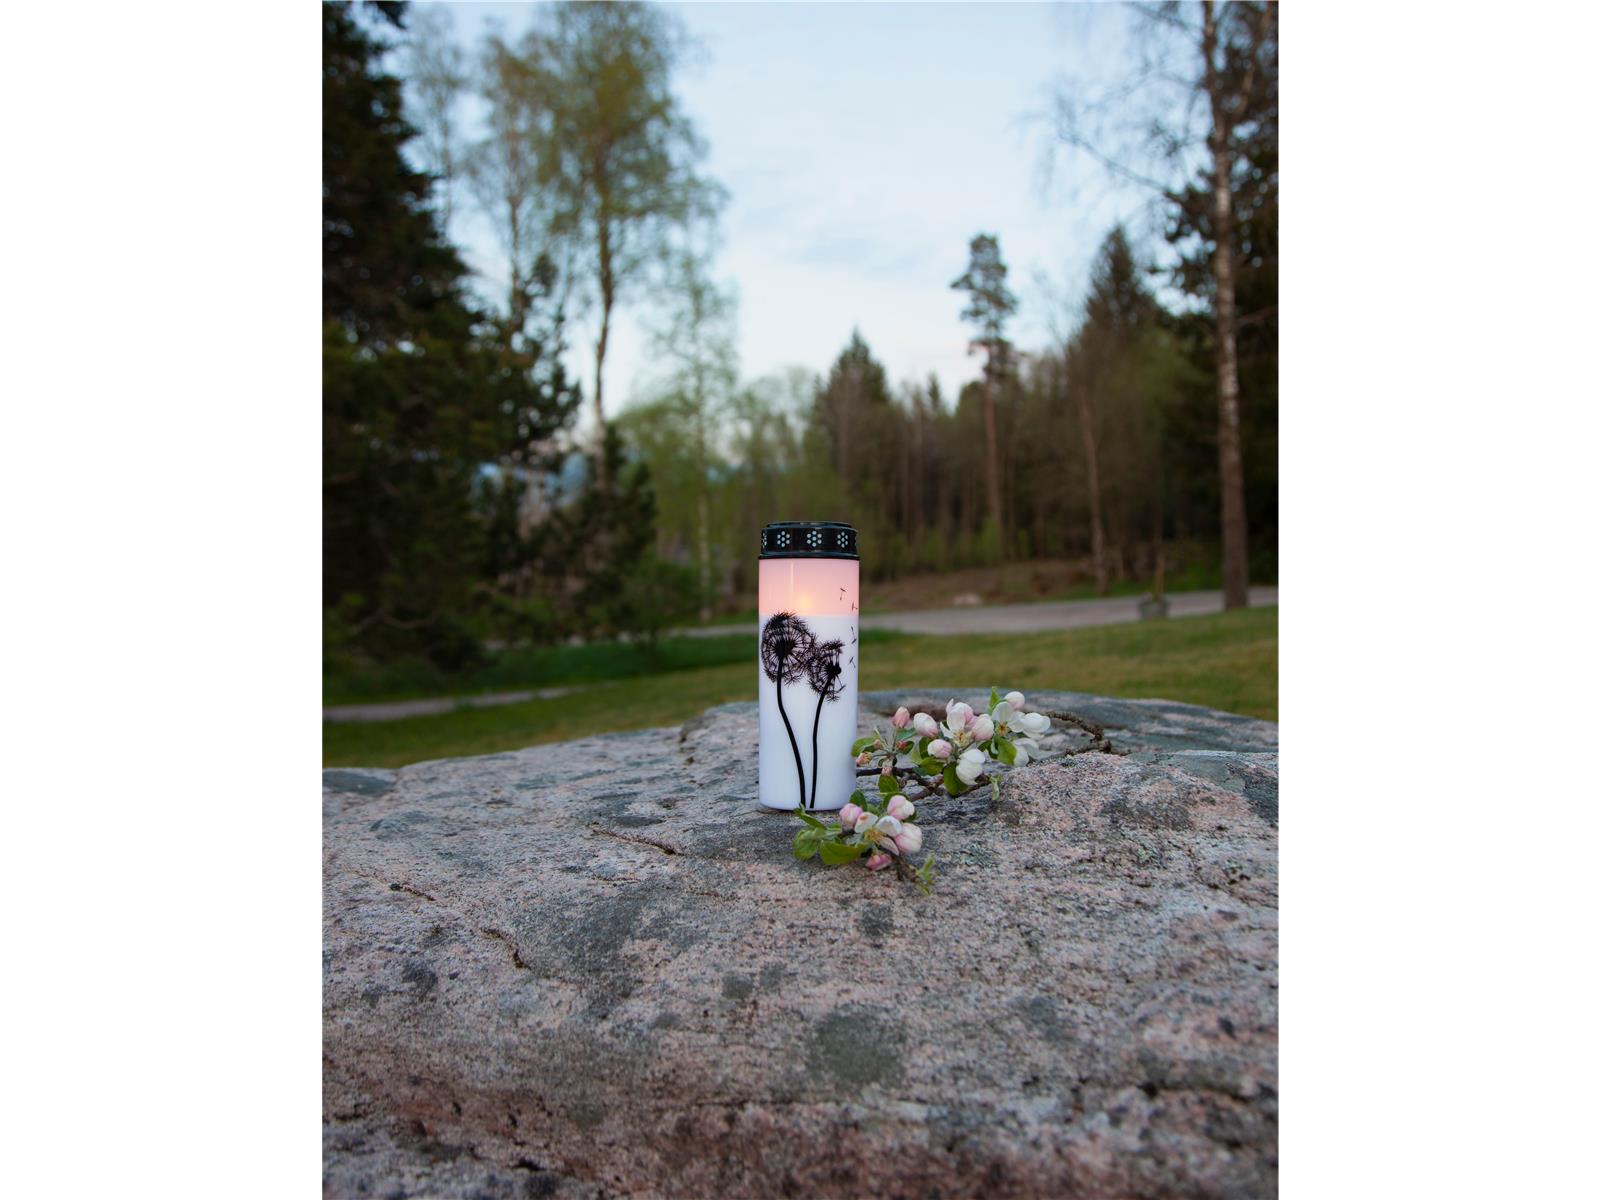 LED-Grablicht ''Dandelion'', weiß mit Pusteblumenmotiv, warmweiß, 21x7cm, outdoor